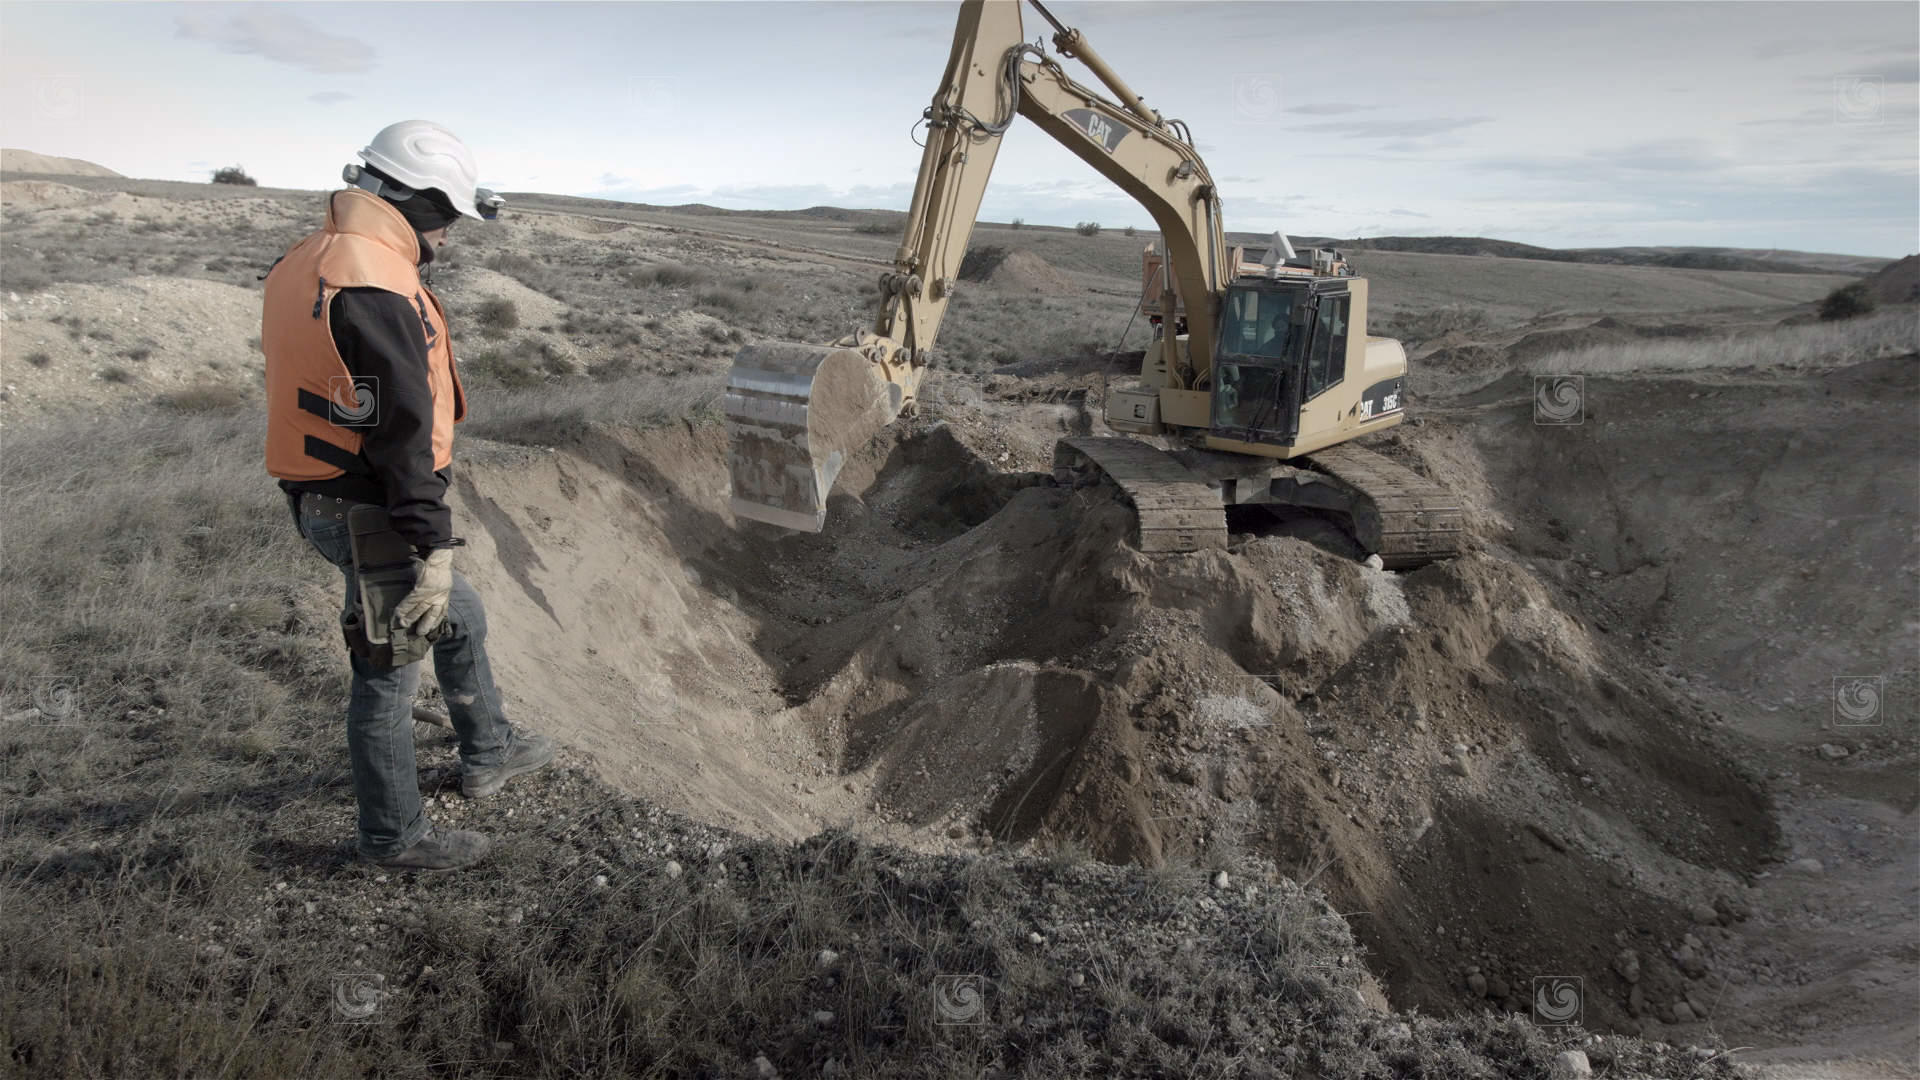 Fotograma mostrando trabajos de excavación en tareas de descontaminación de suelos con explosivos